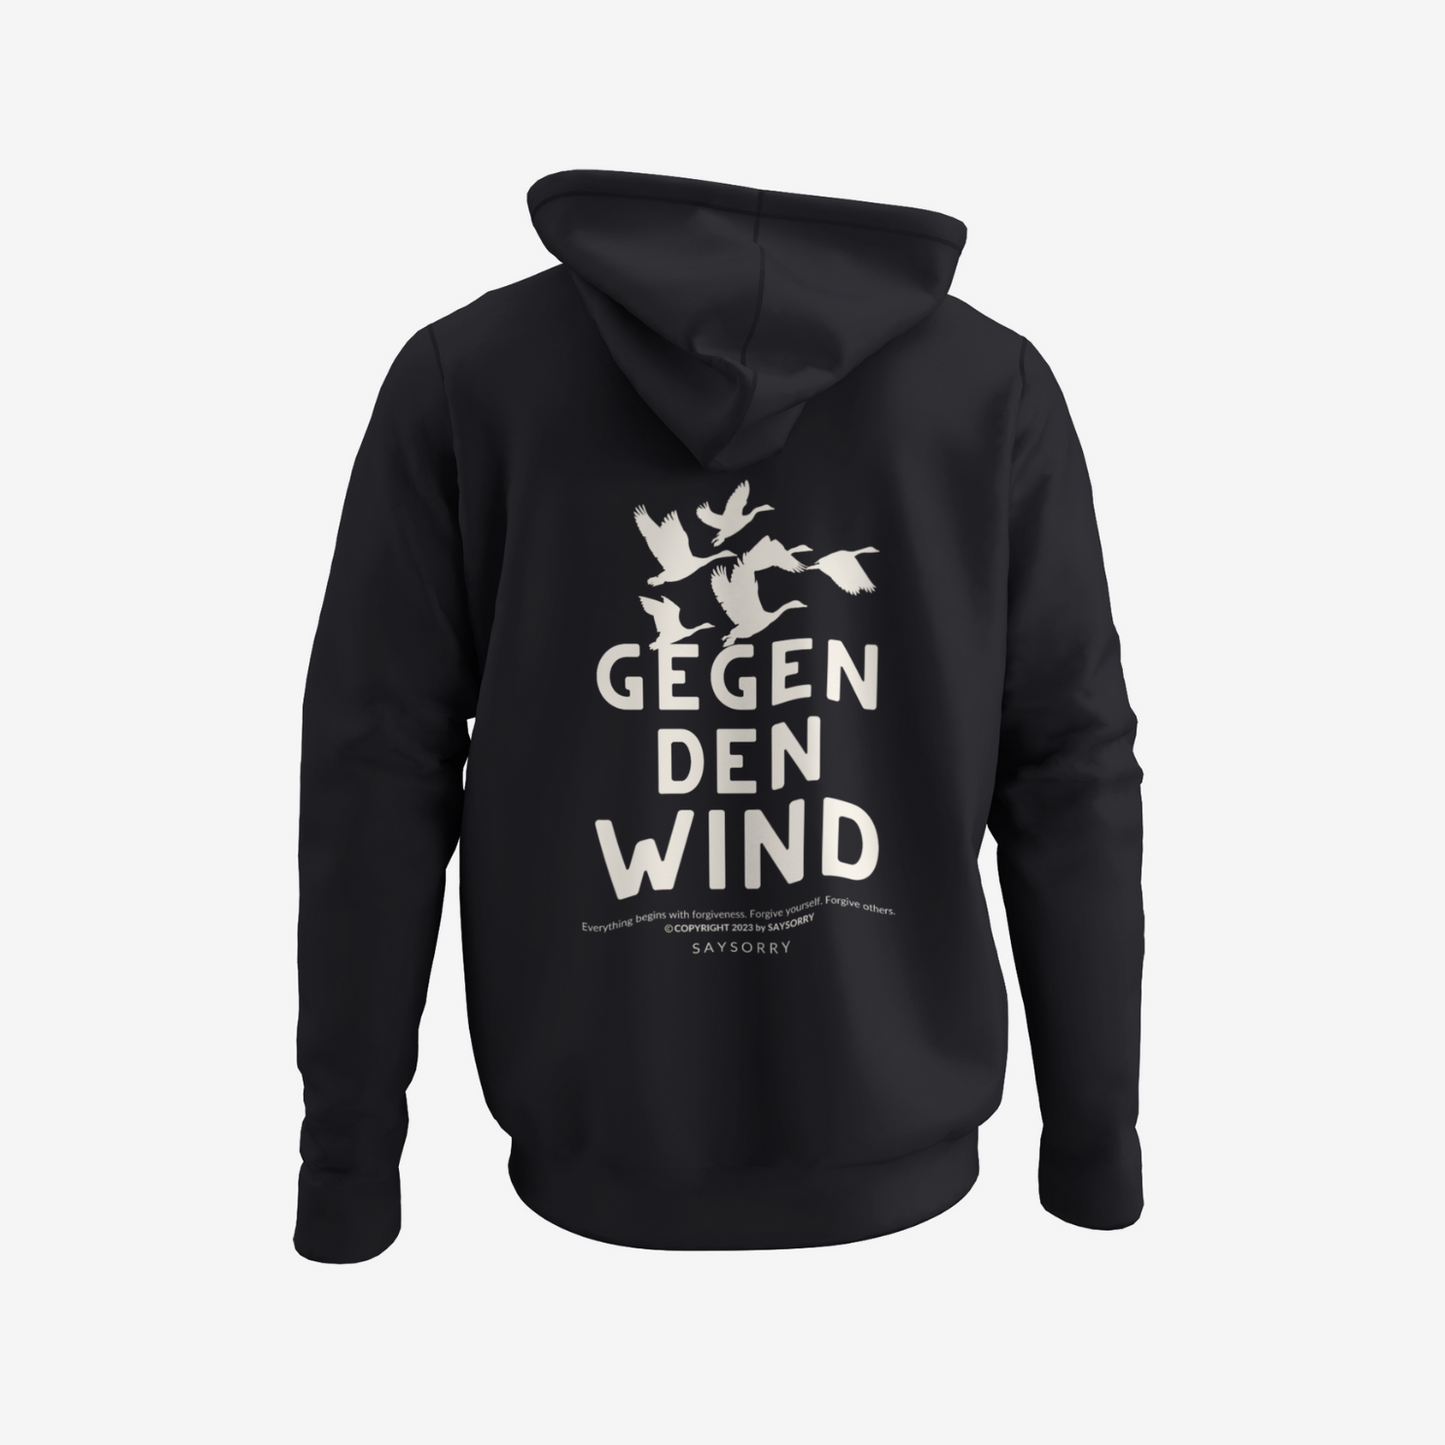 100% Organic unisex Hoodie in vielen Farben »Gegen den Wind« vorne bestickt & hinten bedruckt